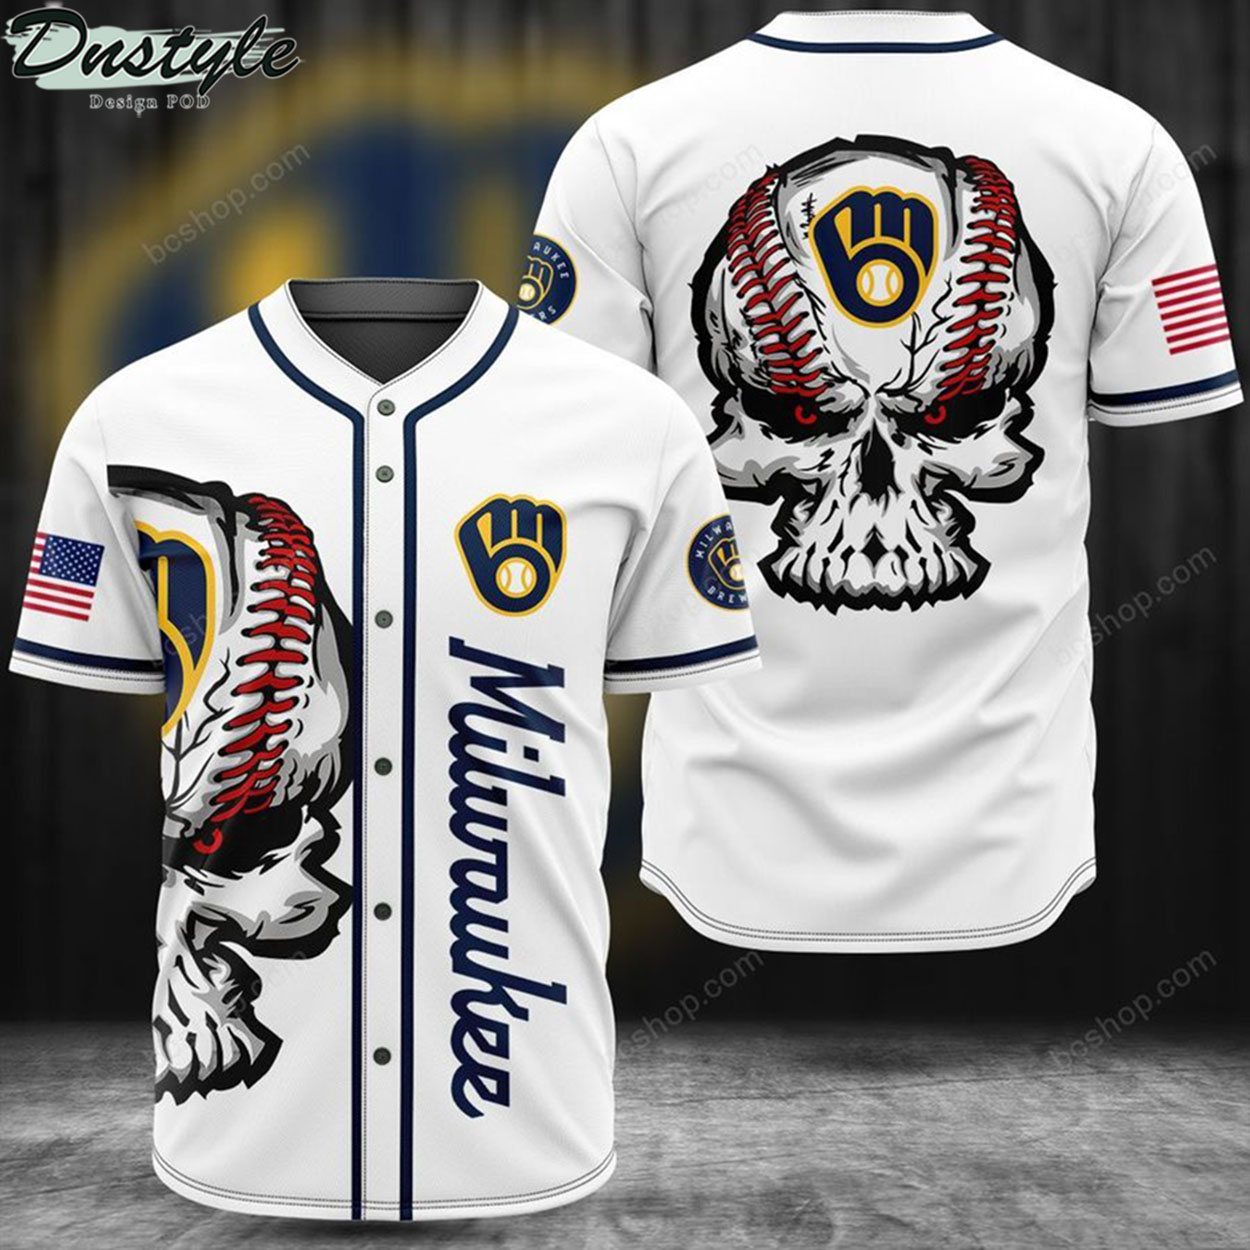 Milwaukee skull baseball jersey 2